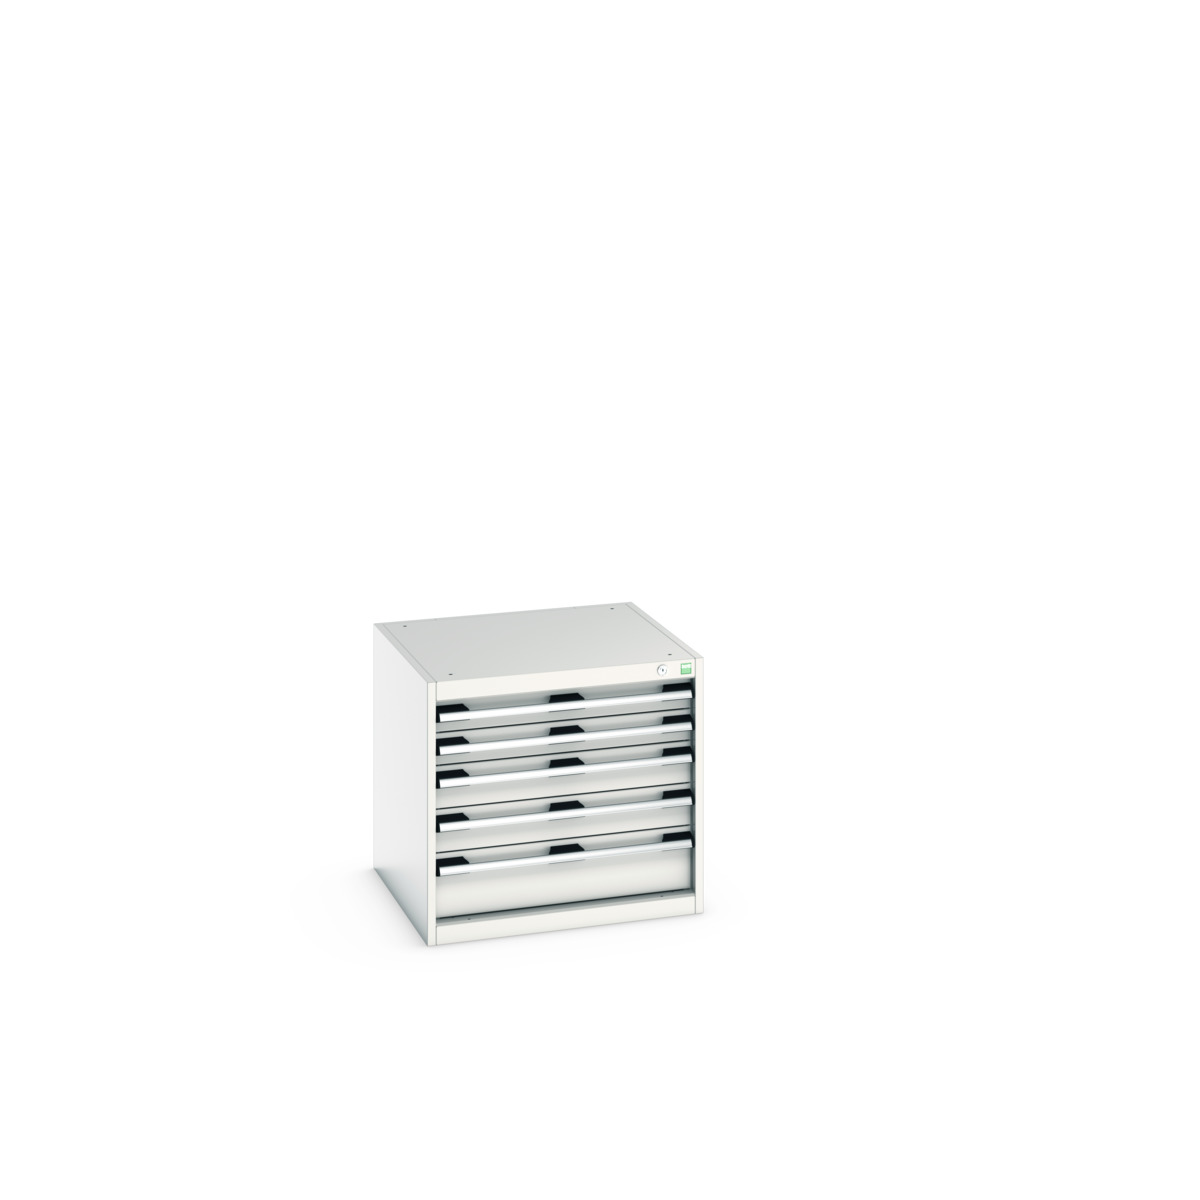 40019152.16V - cubio drawer cabinet